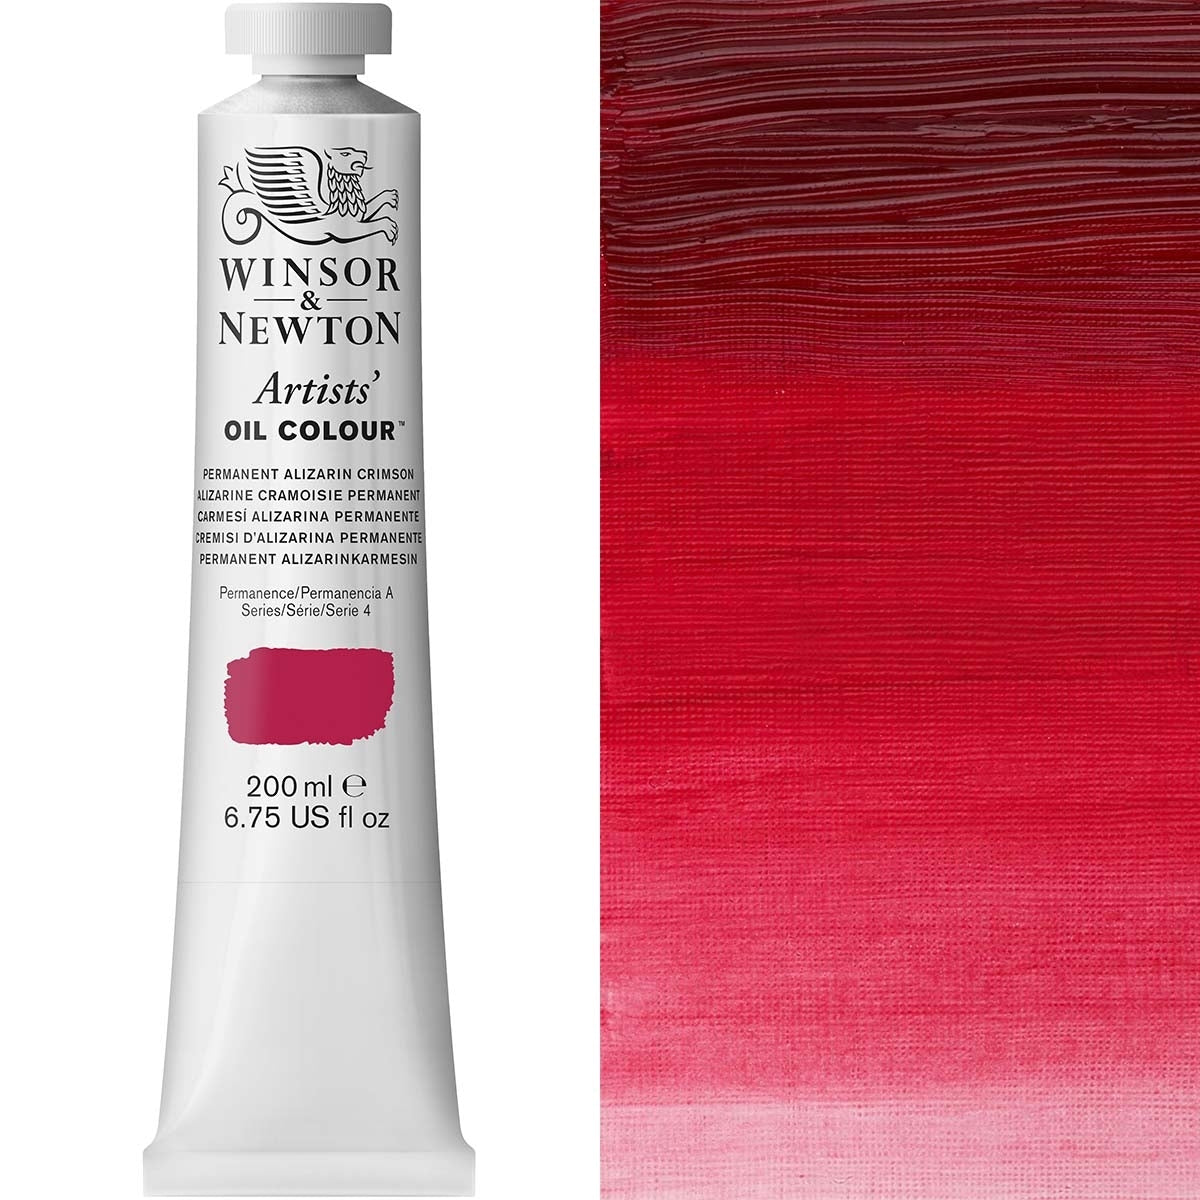 Winsor and Newton - Artists' Oil Colour - 200ml - Permanent Alizarin Crimson